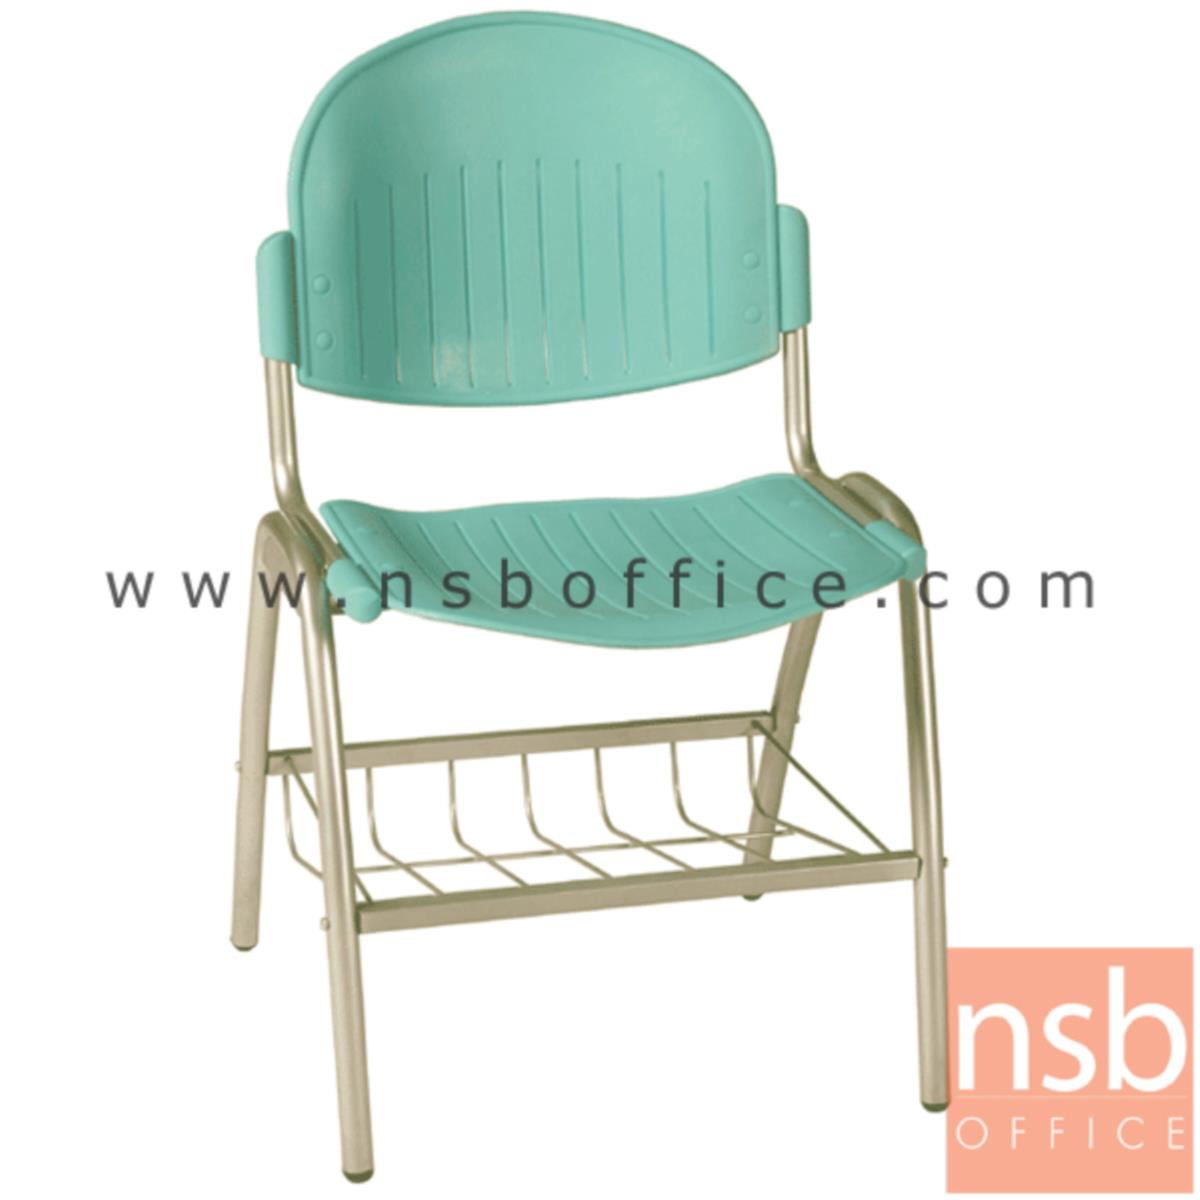 เก้าอี้อเนกประสงค์เฟรมโพลี่ รุ่น A156-546  ขาเหล็กพ่นสีเทา